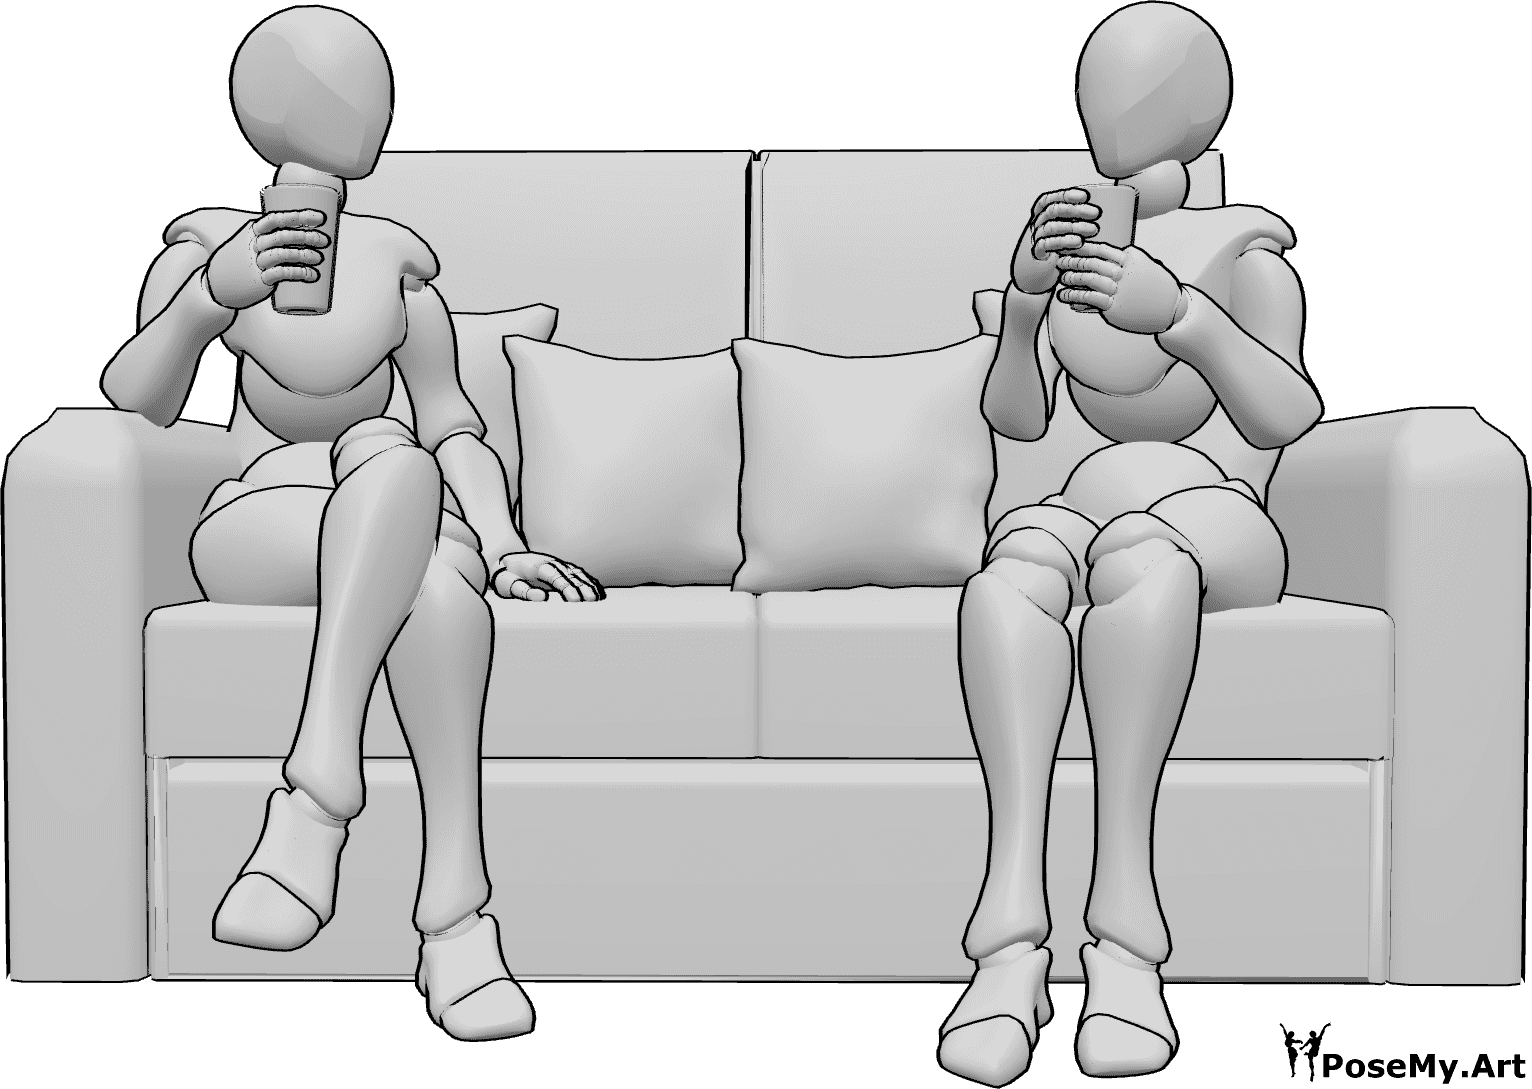 Posen-Referenz- Zwei weibliche Trinkerinnen in Pose - Zwei Frauen sitzen auf einer Couch, halten Gläser in der Hand und trinken etwas.